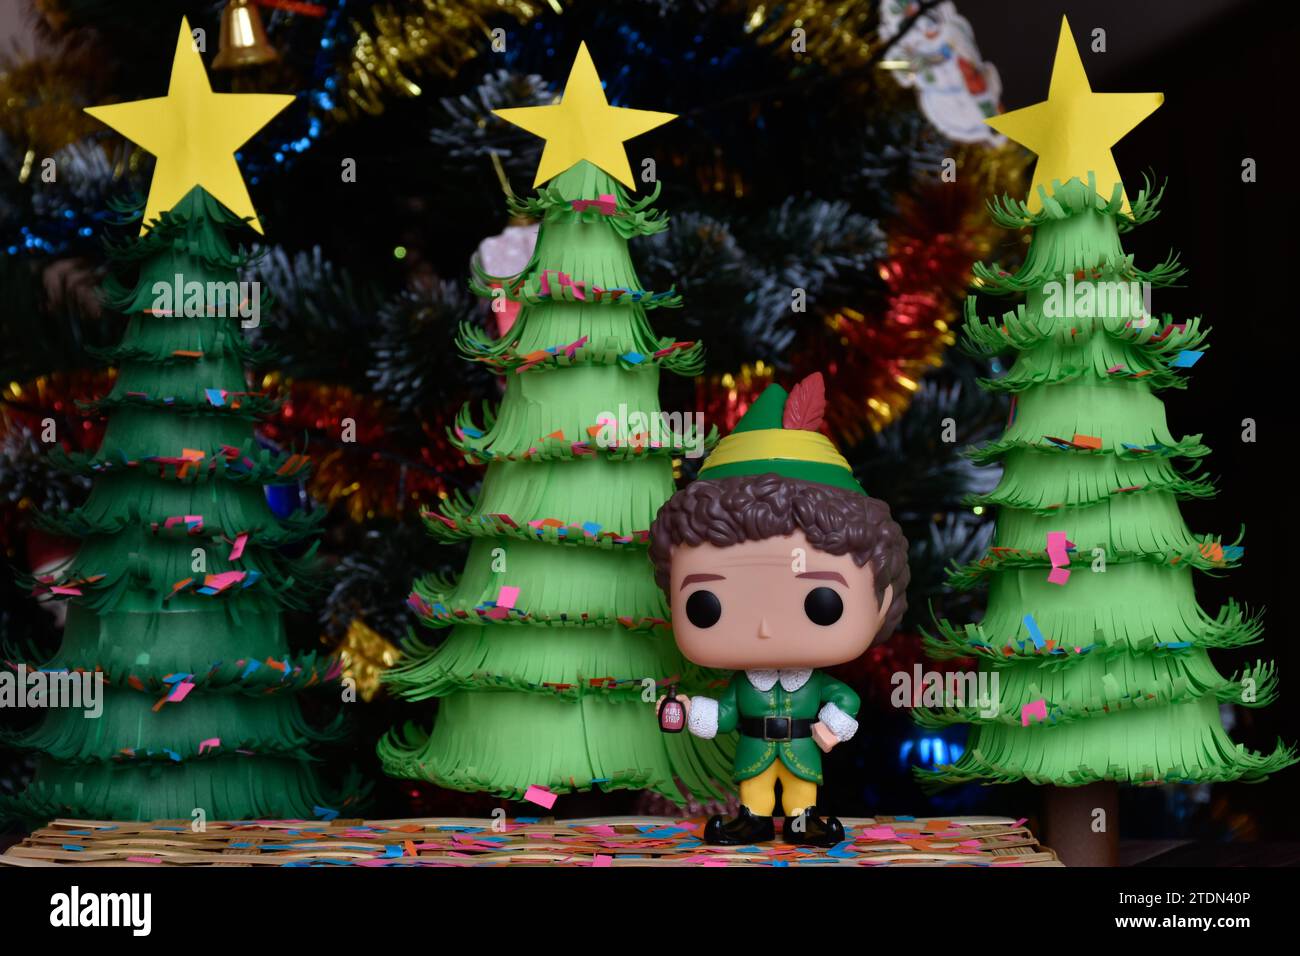 Funko Pop Actionfigur von Buddy aus dem Familienkomödie Elf. Weihnachtsbäume aus handgefertigtem Papier, Ornamente, Konfetti, Girlande, festliche Einrichtung. Stockfoto